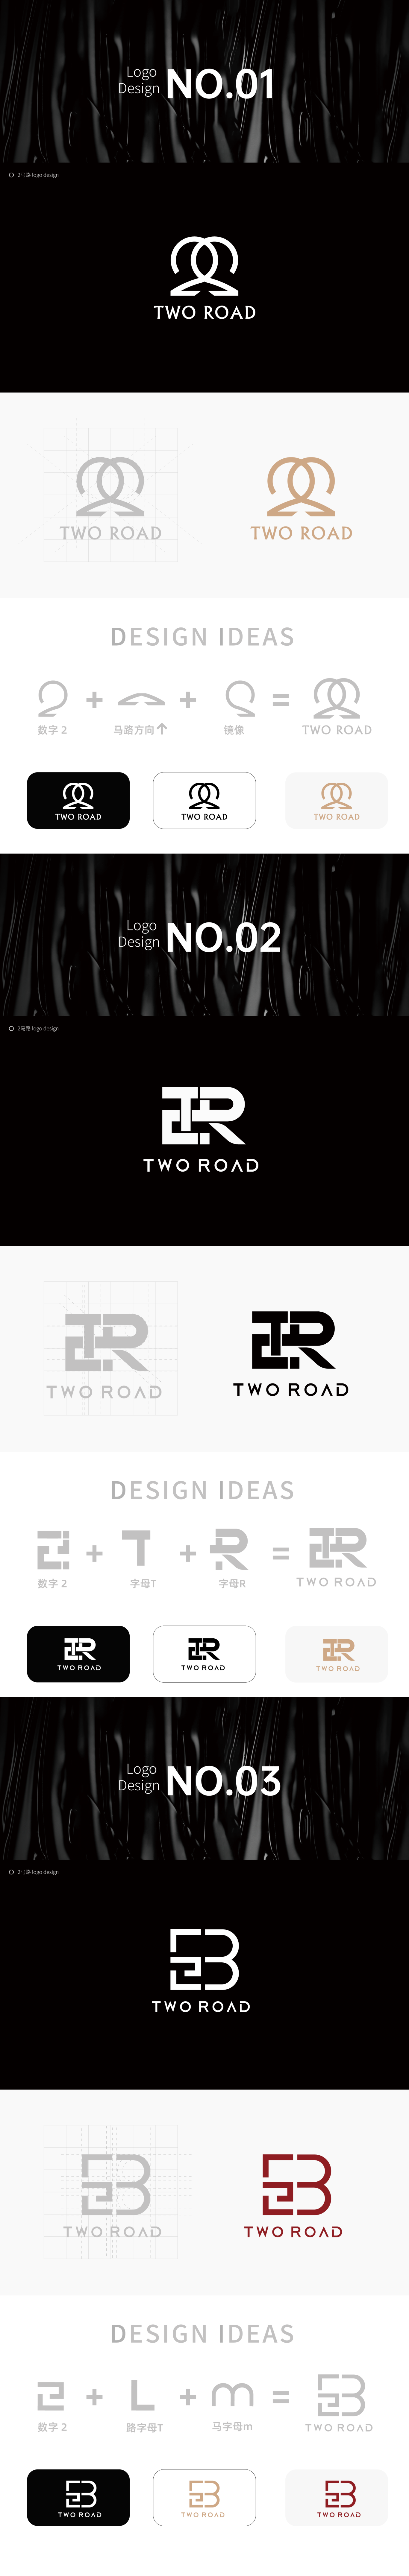 广州二马路服装品牌logo设计提案图0